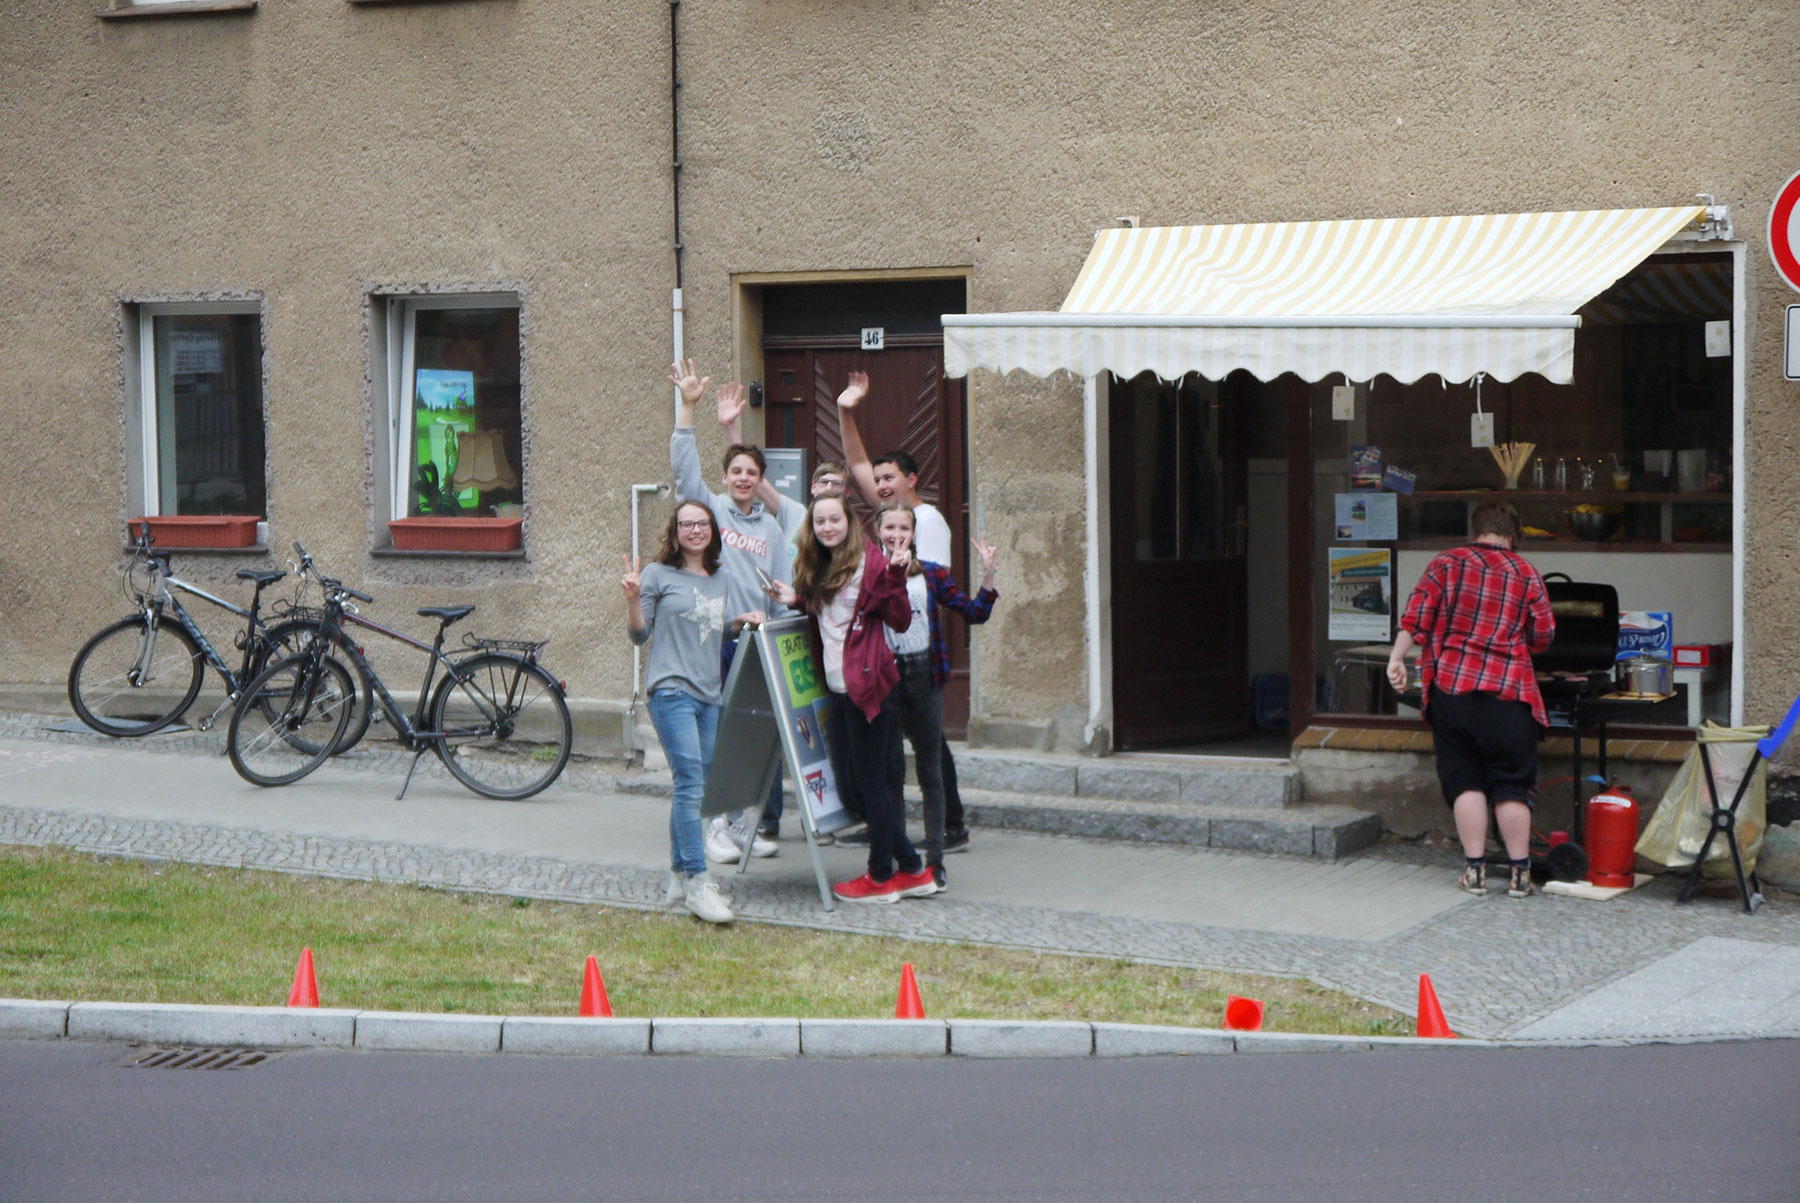 Startaktionen im Jugendladen der CVJM Bad Belzig